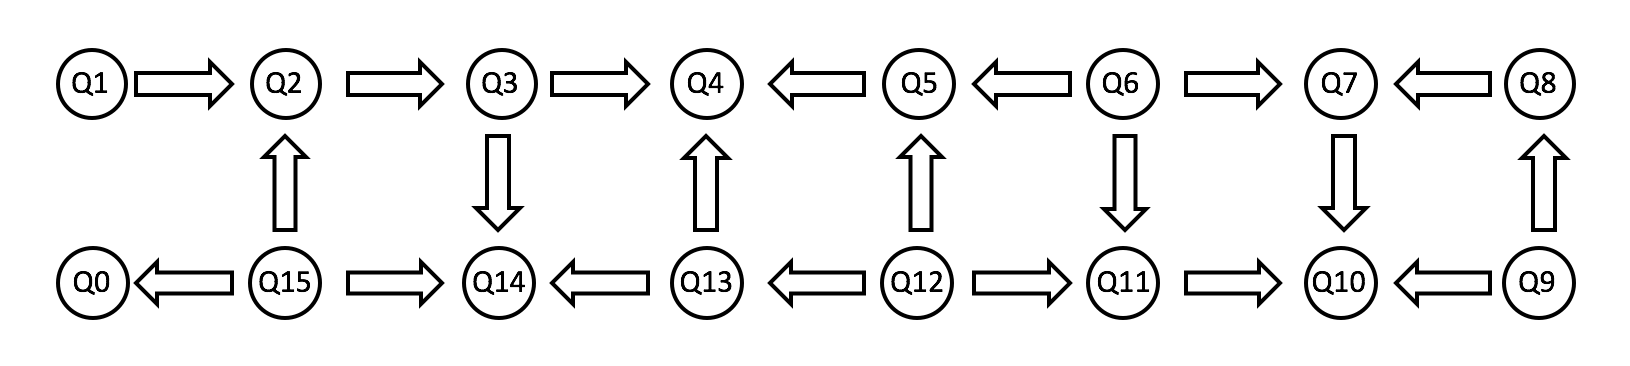 Обзор и сравнение квантовых программных платформ гейтового уровня - 3